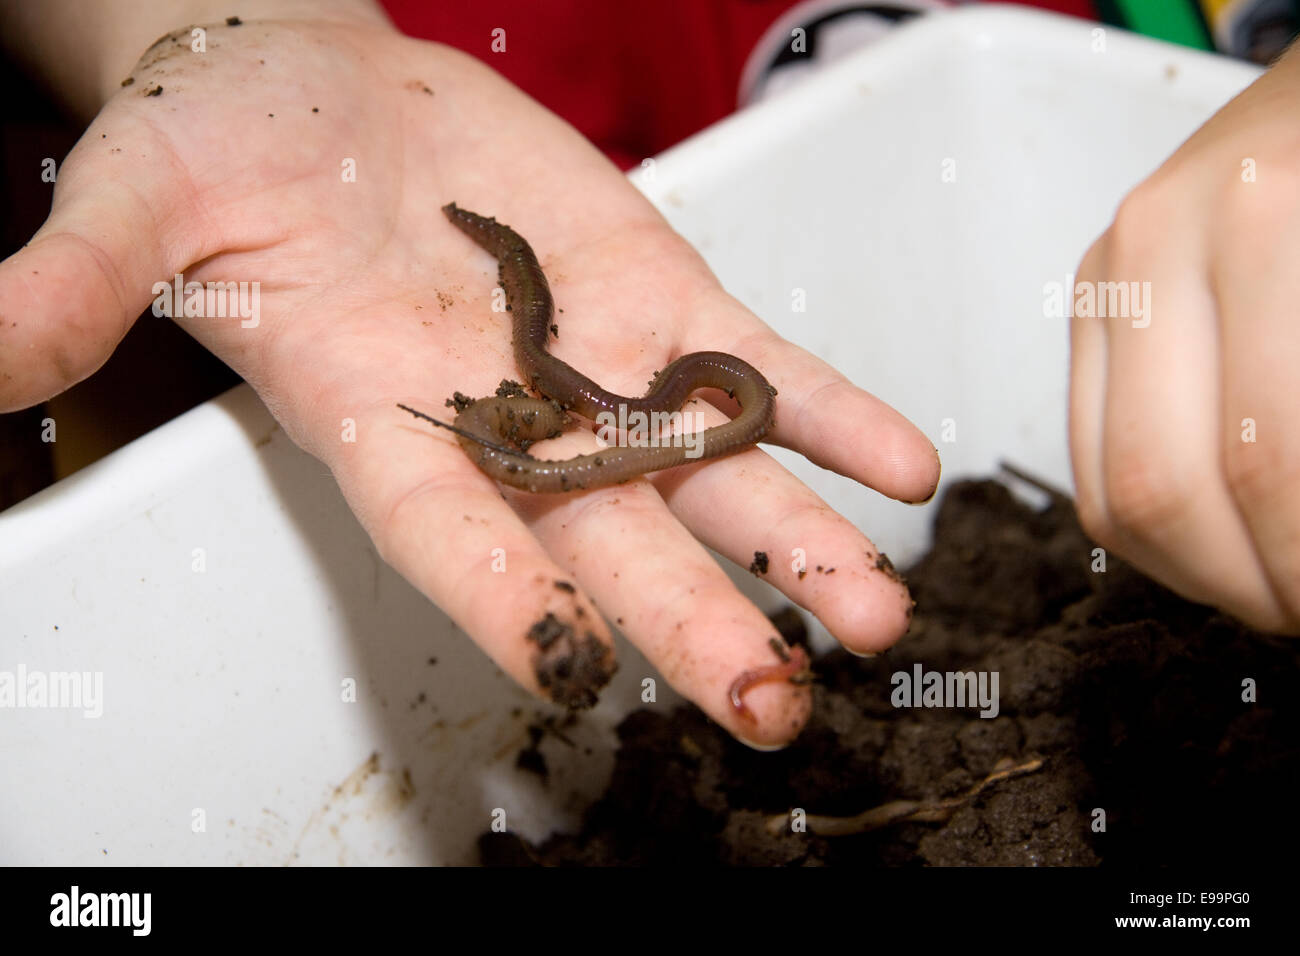 Earthworm in children hand Stock Photo